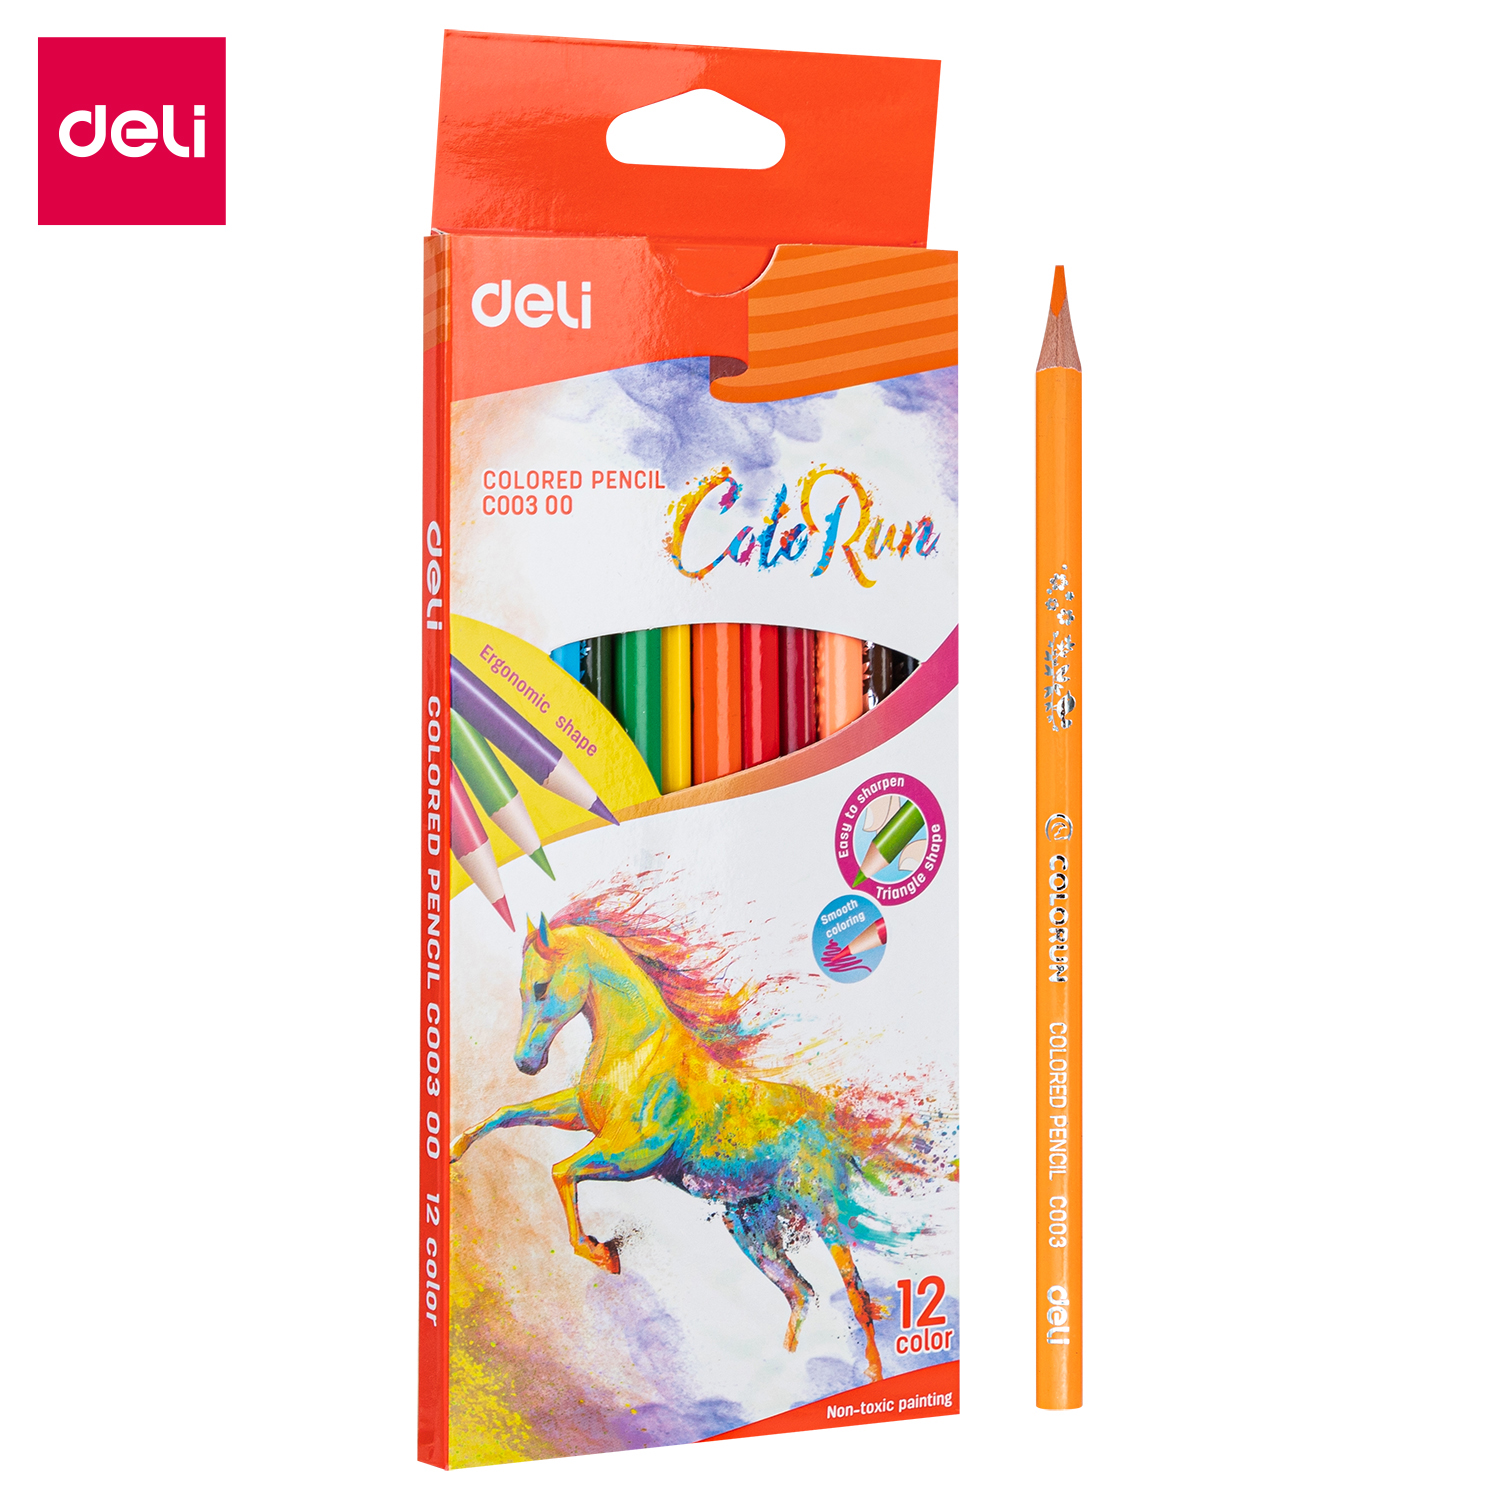 Deli-EC00300 Colored Pencil